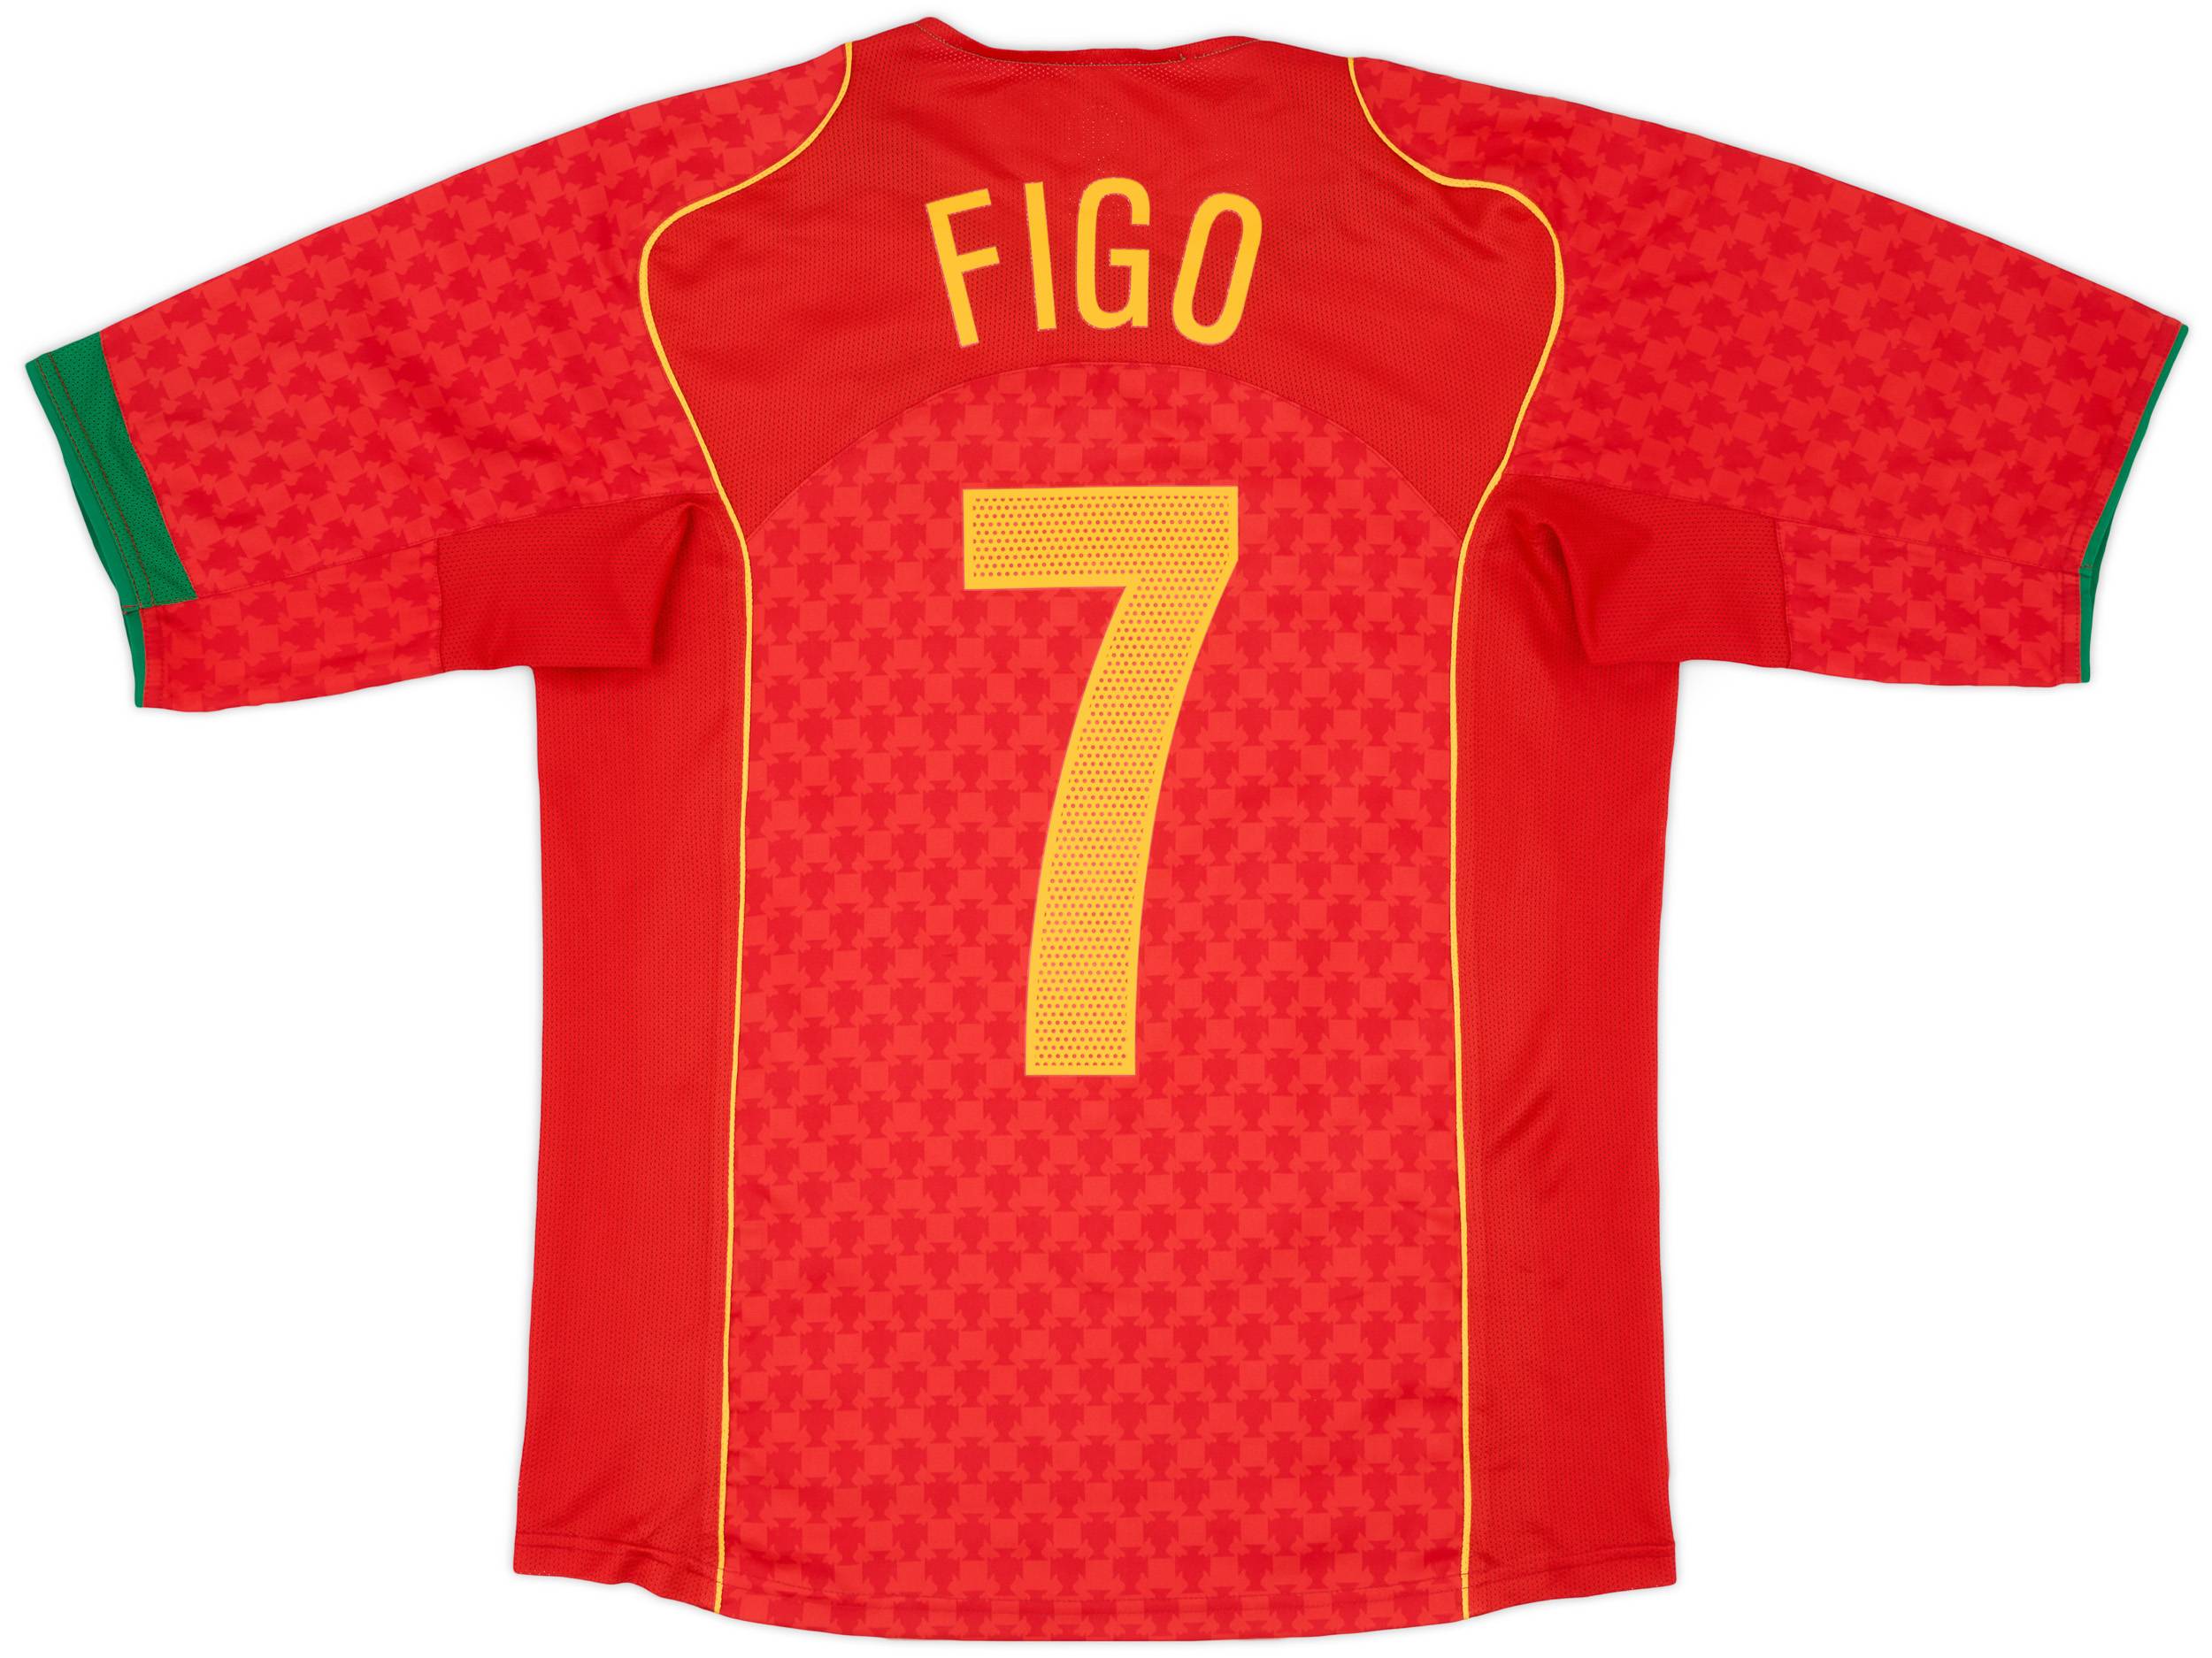 2004-06 Portugal Home Shirt Figo #7 - 9/10 - (S)